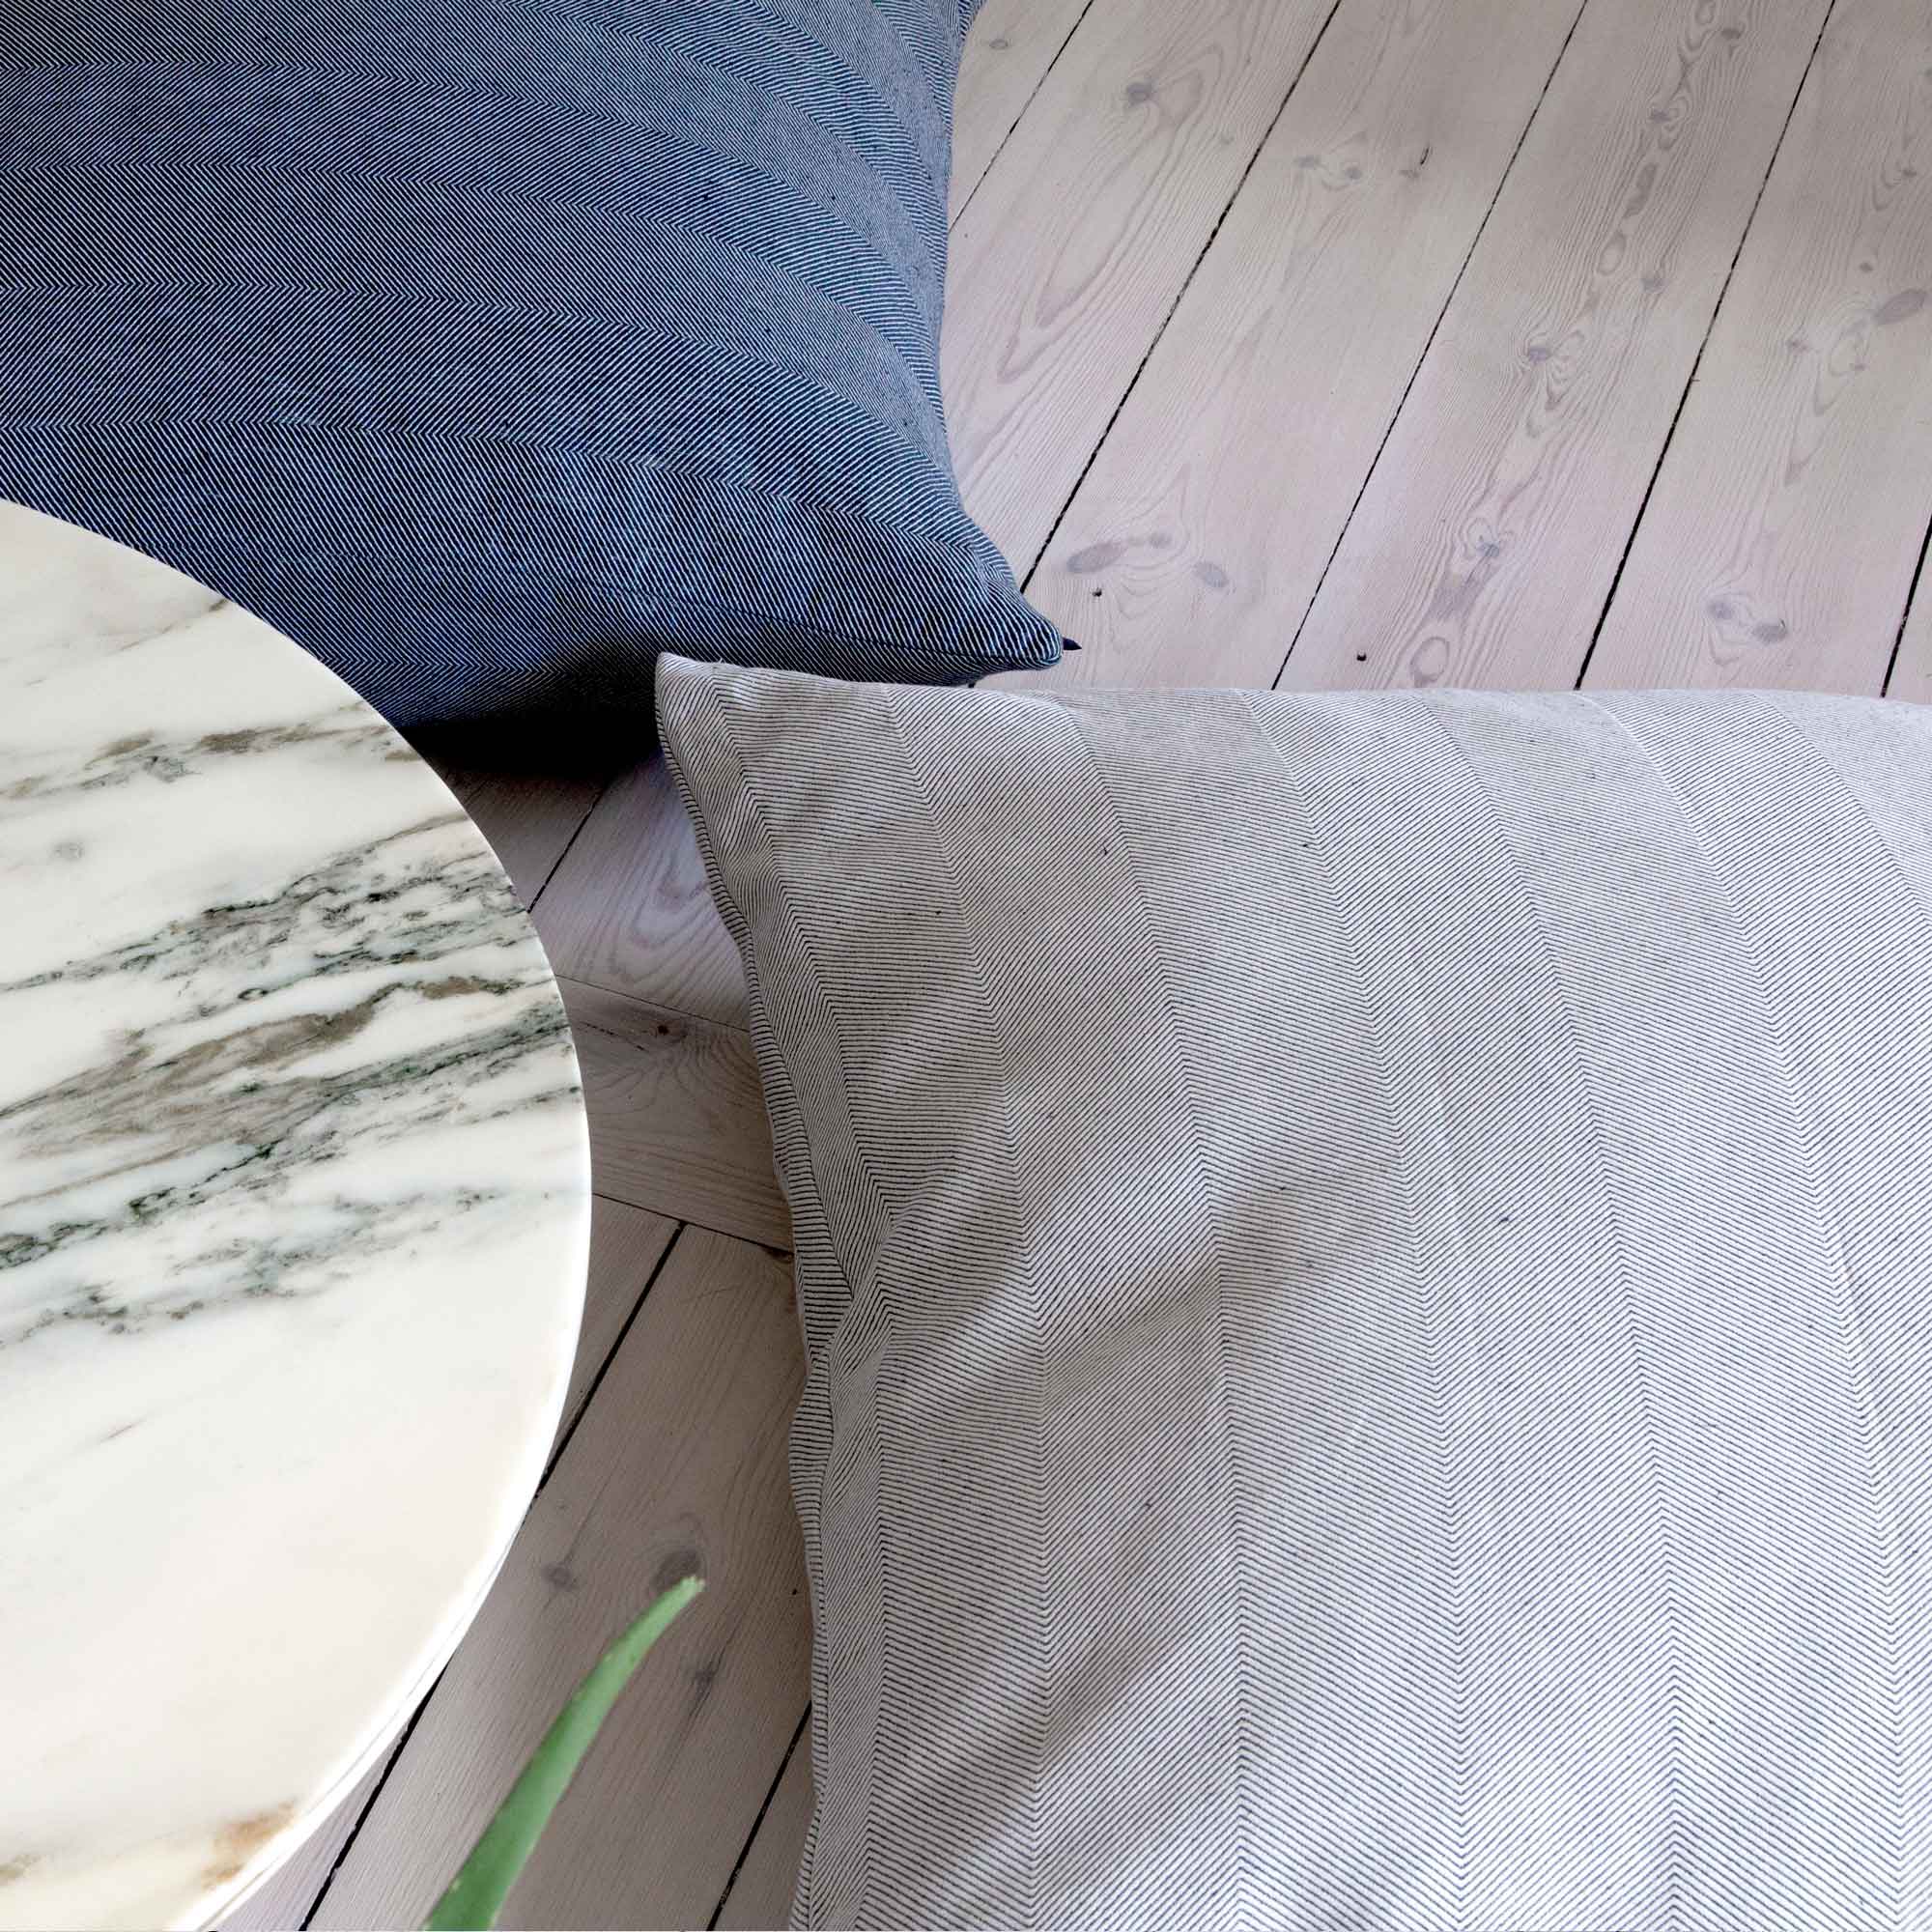 Floor cushion cover linen/cotton light blue design by Anne Rosenberg, RosenbergCph